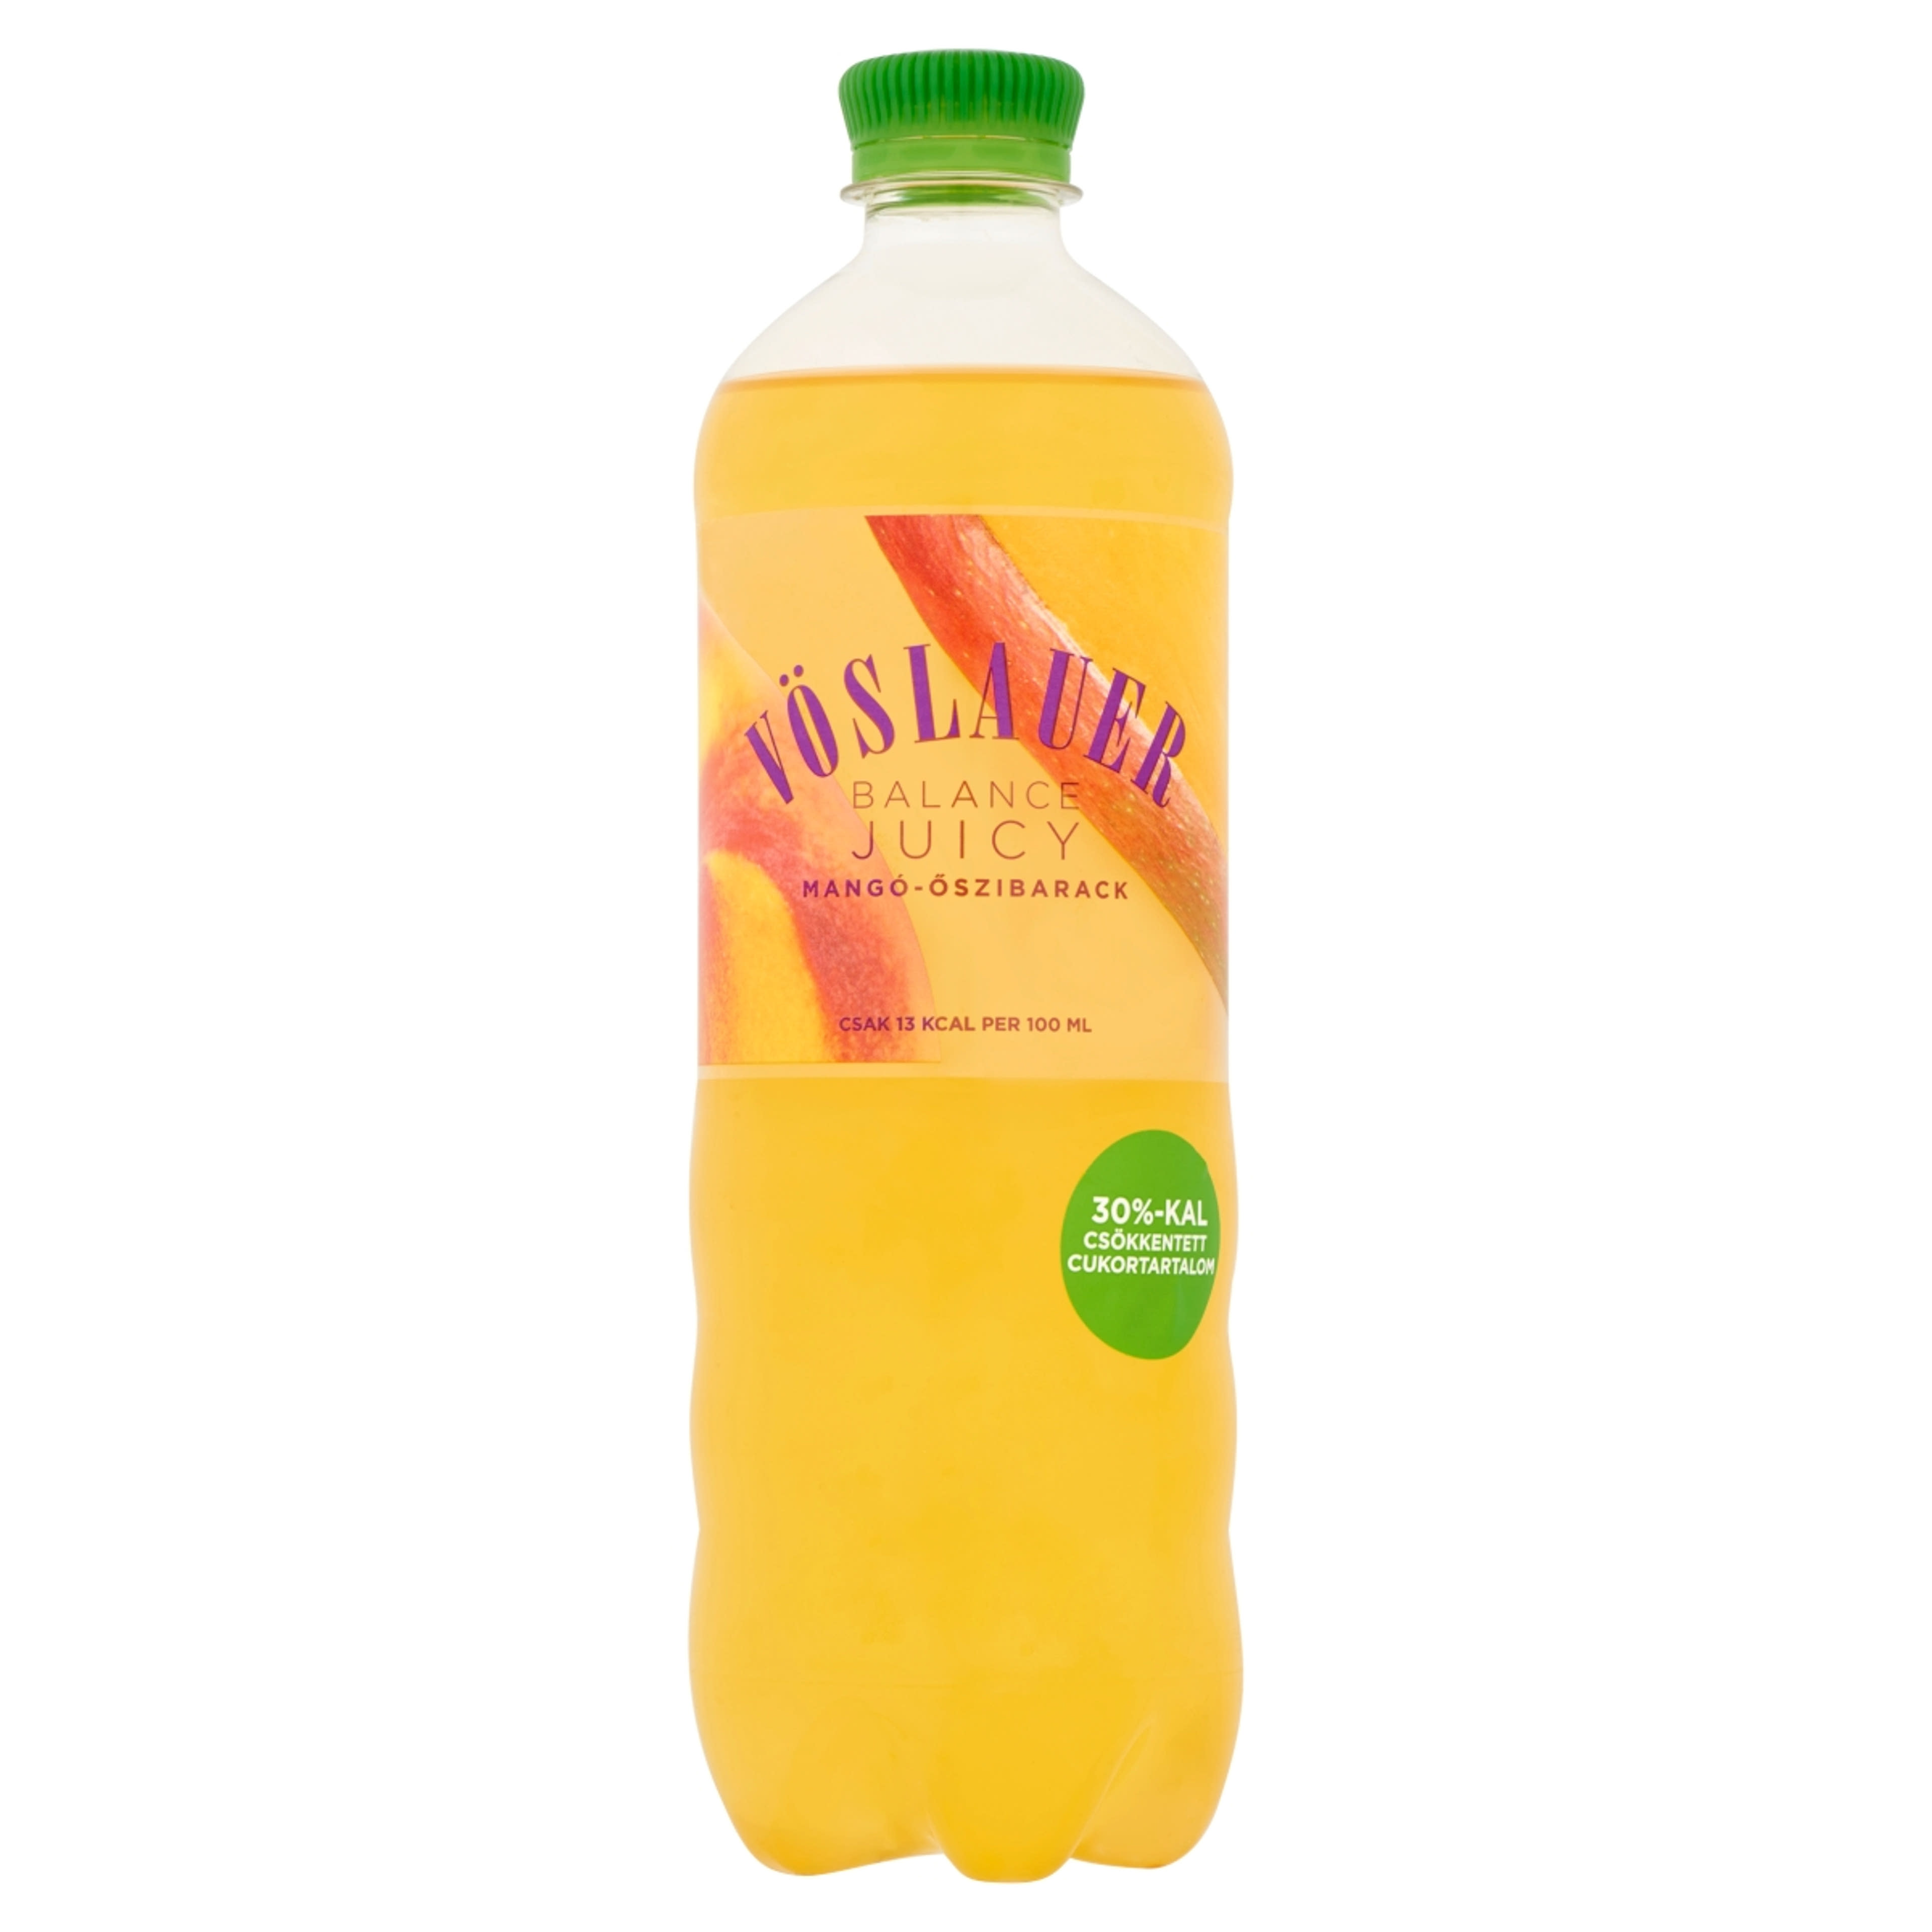 Vöslauer Balance Juicy szénsavas üdítőital mangó-őszibarack ízű - 750 ml